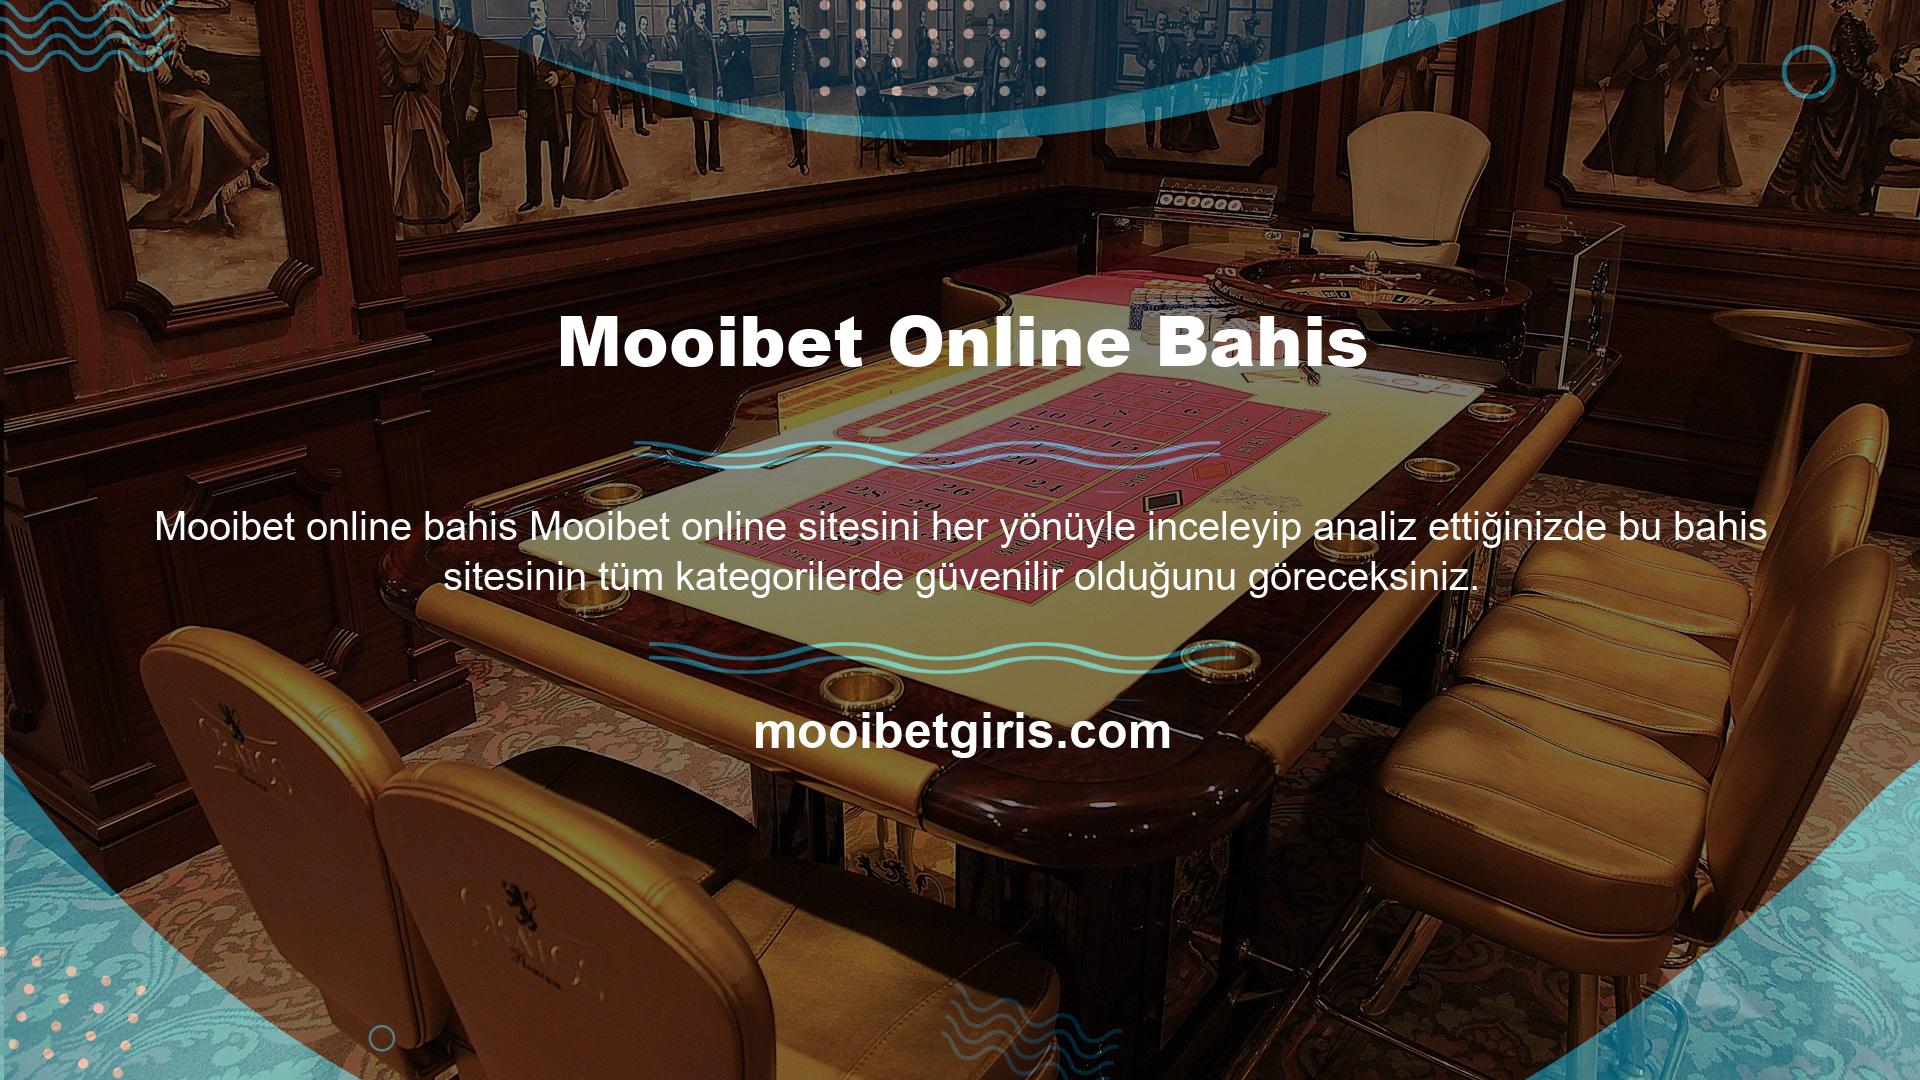 Mooibet Online Bahis